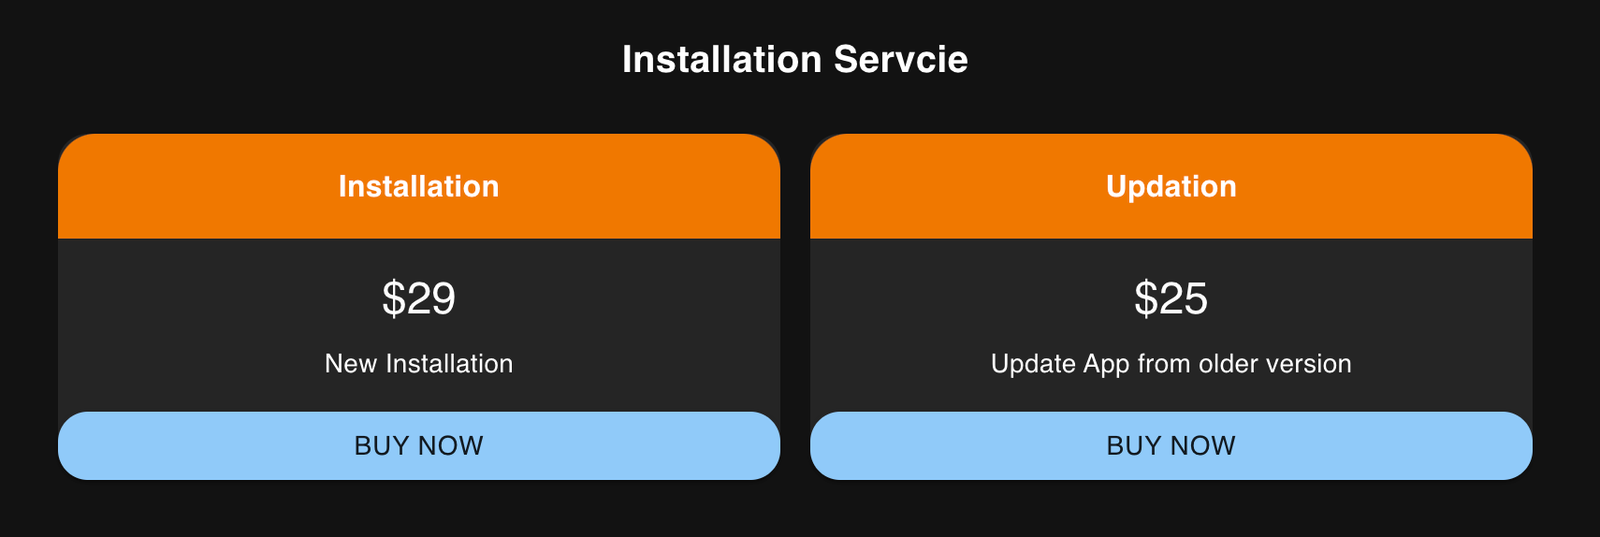 whatsham install service